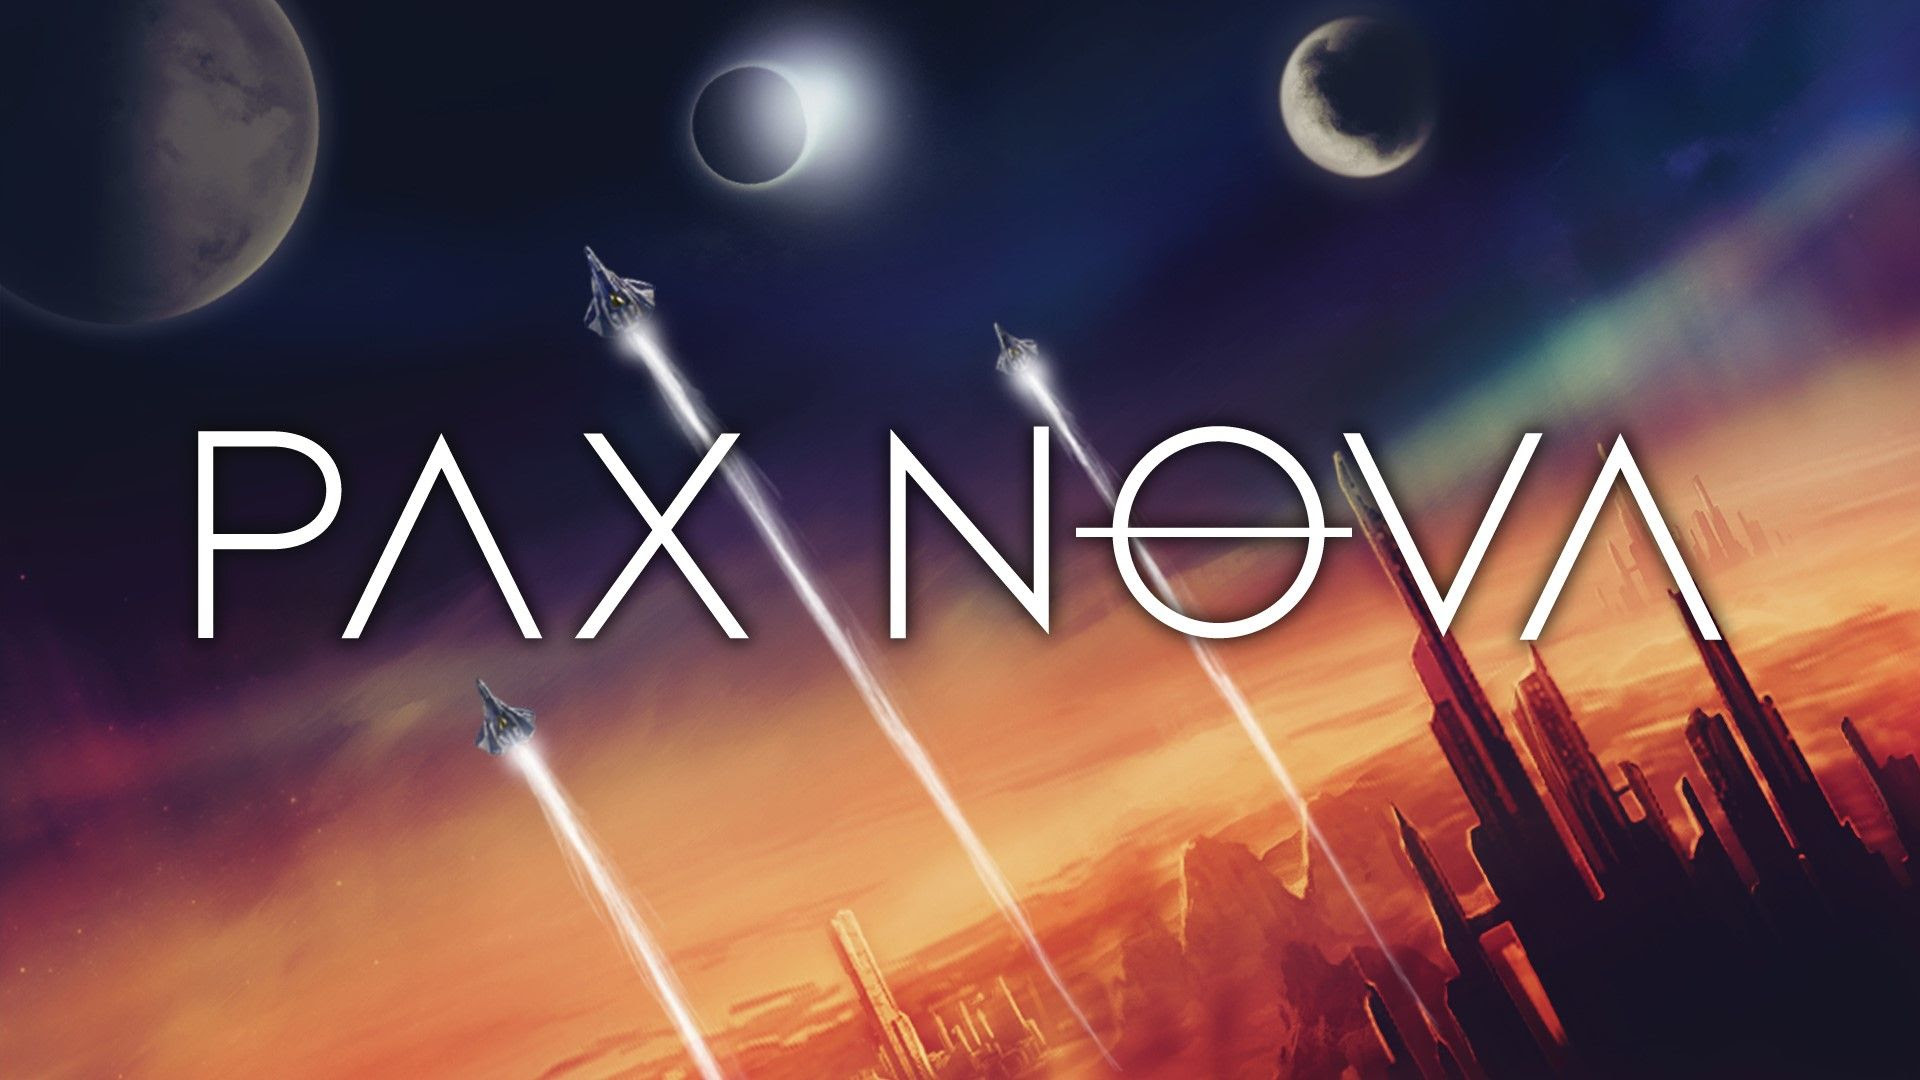 Pax Nova's full release arrives on Steam April 28